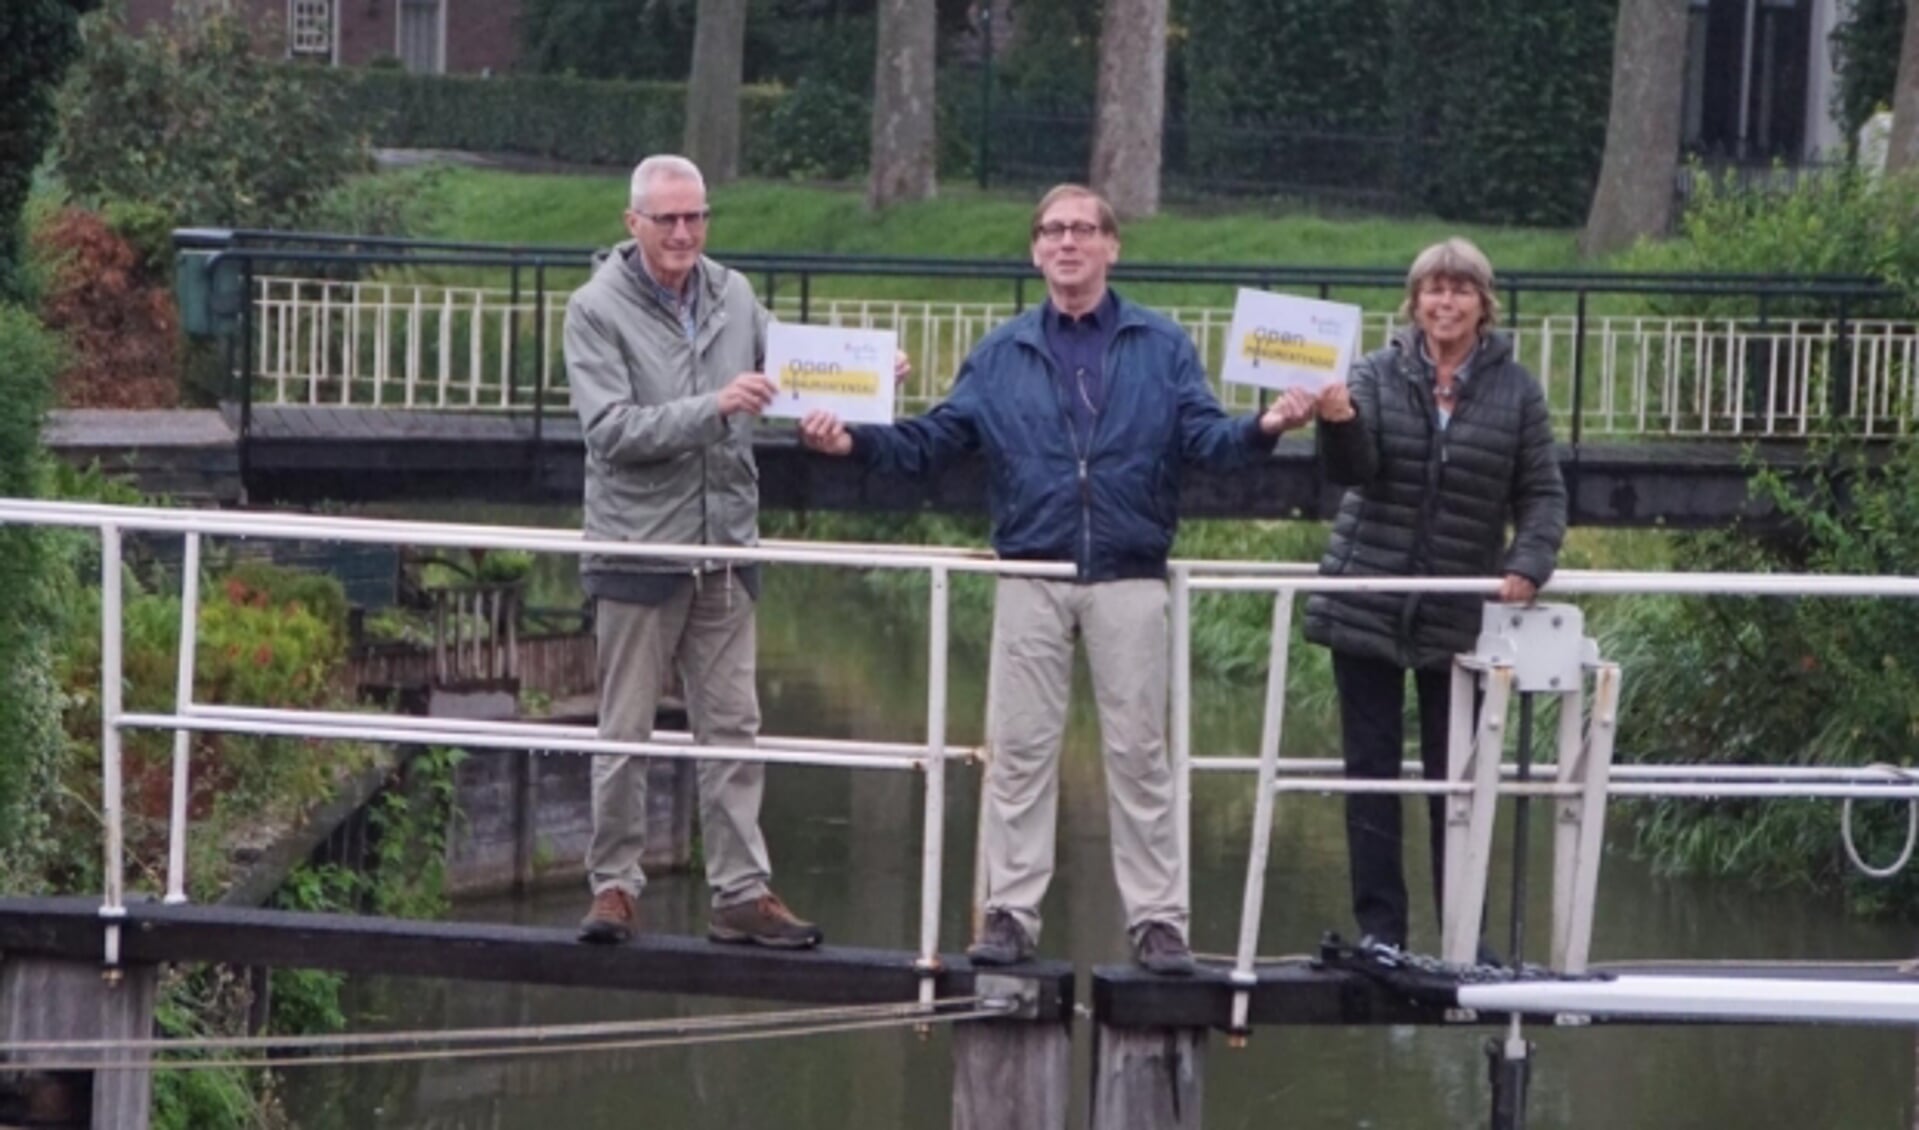 Evert de Jong van Open Monumentendag Montfoort/Linschoten draagt de organisatie over aan Boukje Zandstra (Vereniging Oud-Linschoten) en Lex van Wijk (Stichting Oud Montfoort). (Foto: Hans Bakker)